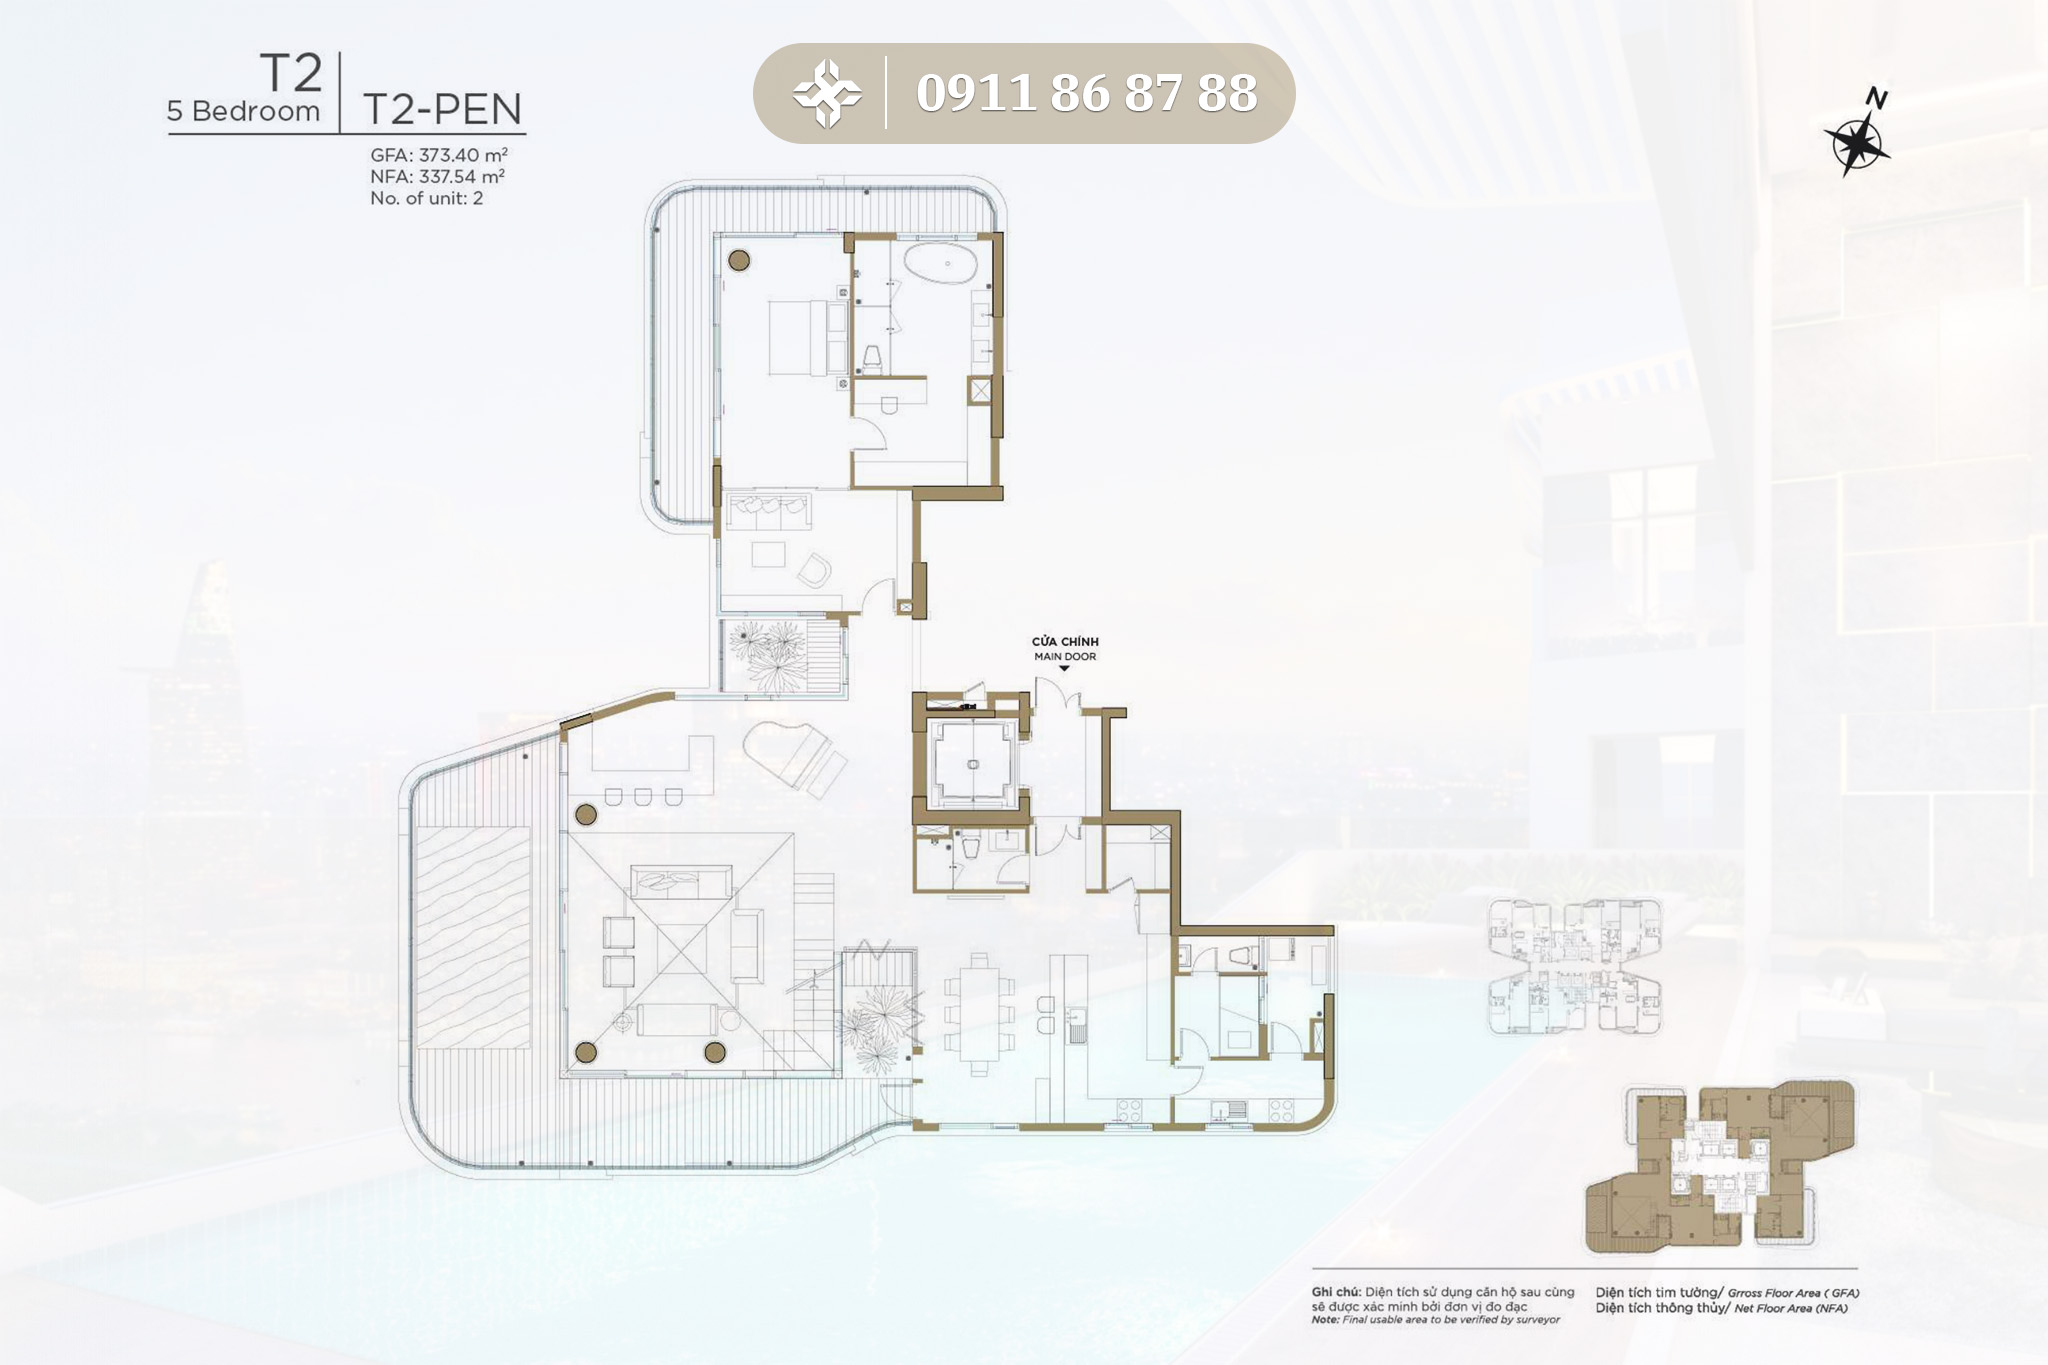 Thủ Thiêm Zeit River - Mặt bằng thiết kế loại căn hộ tháp T2